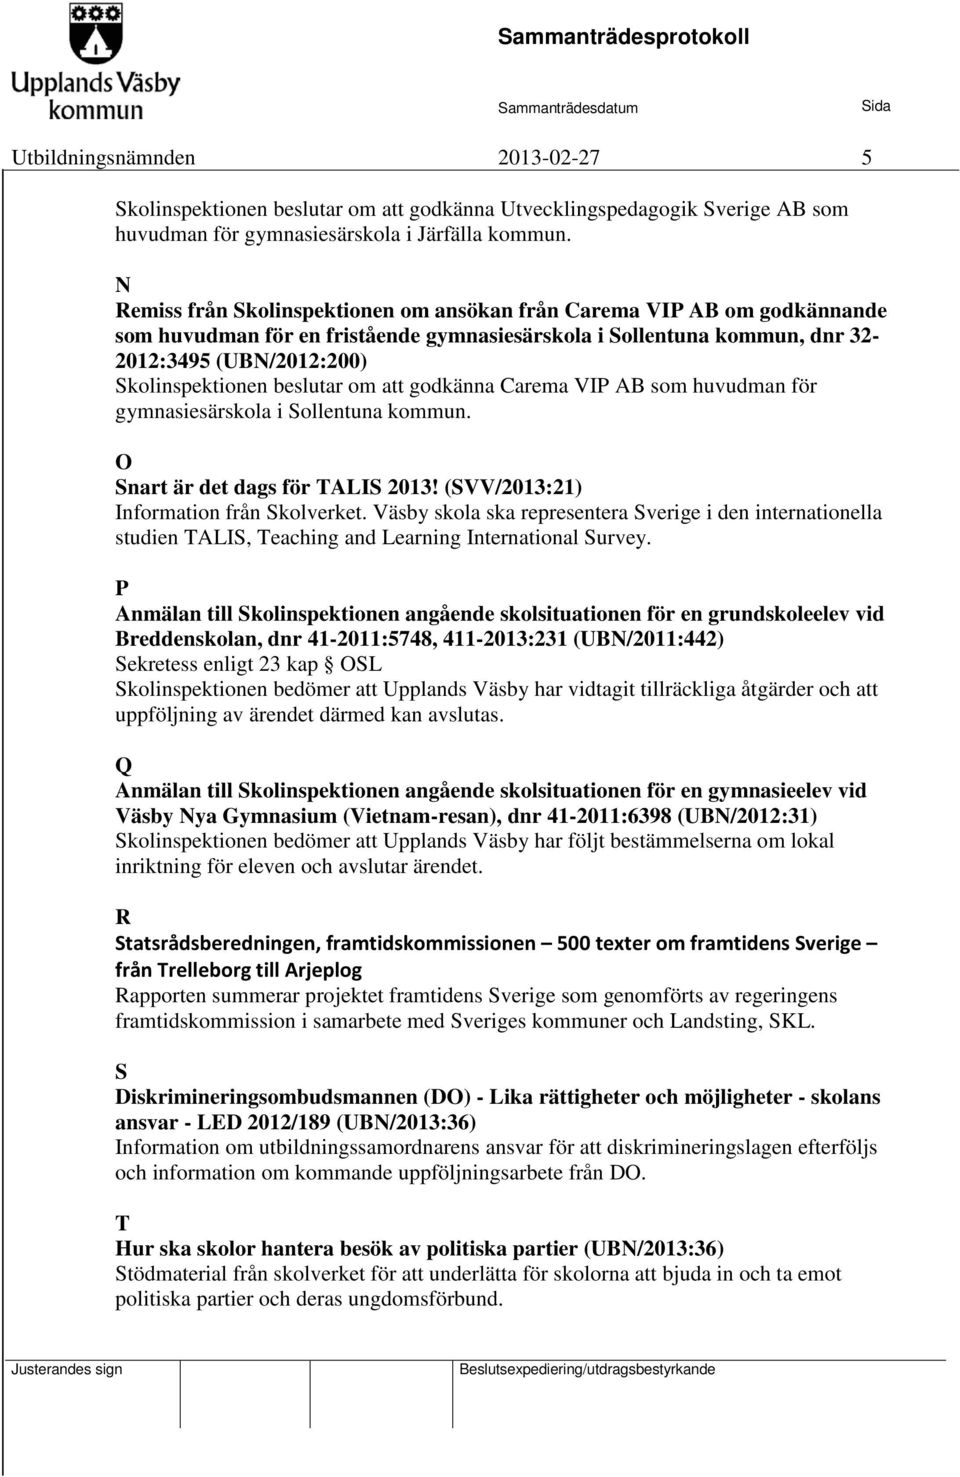 beslutar om att godkänna Carema VIP AB som huvudman för gymnasiesärskola i Sollentuna kommun. O Snart är det dags för TALIS 2013! (SVV/2013:21) Information från Skolverket.